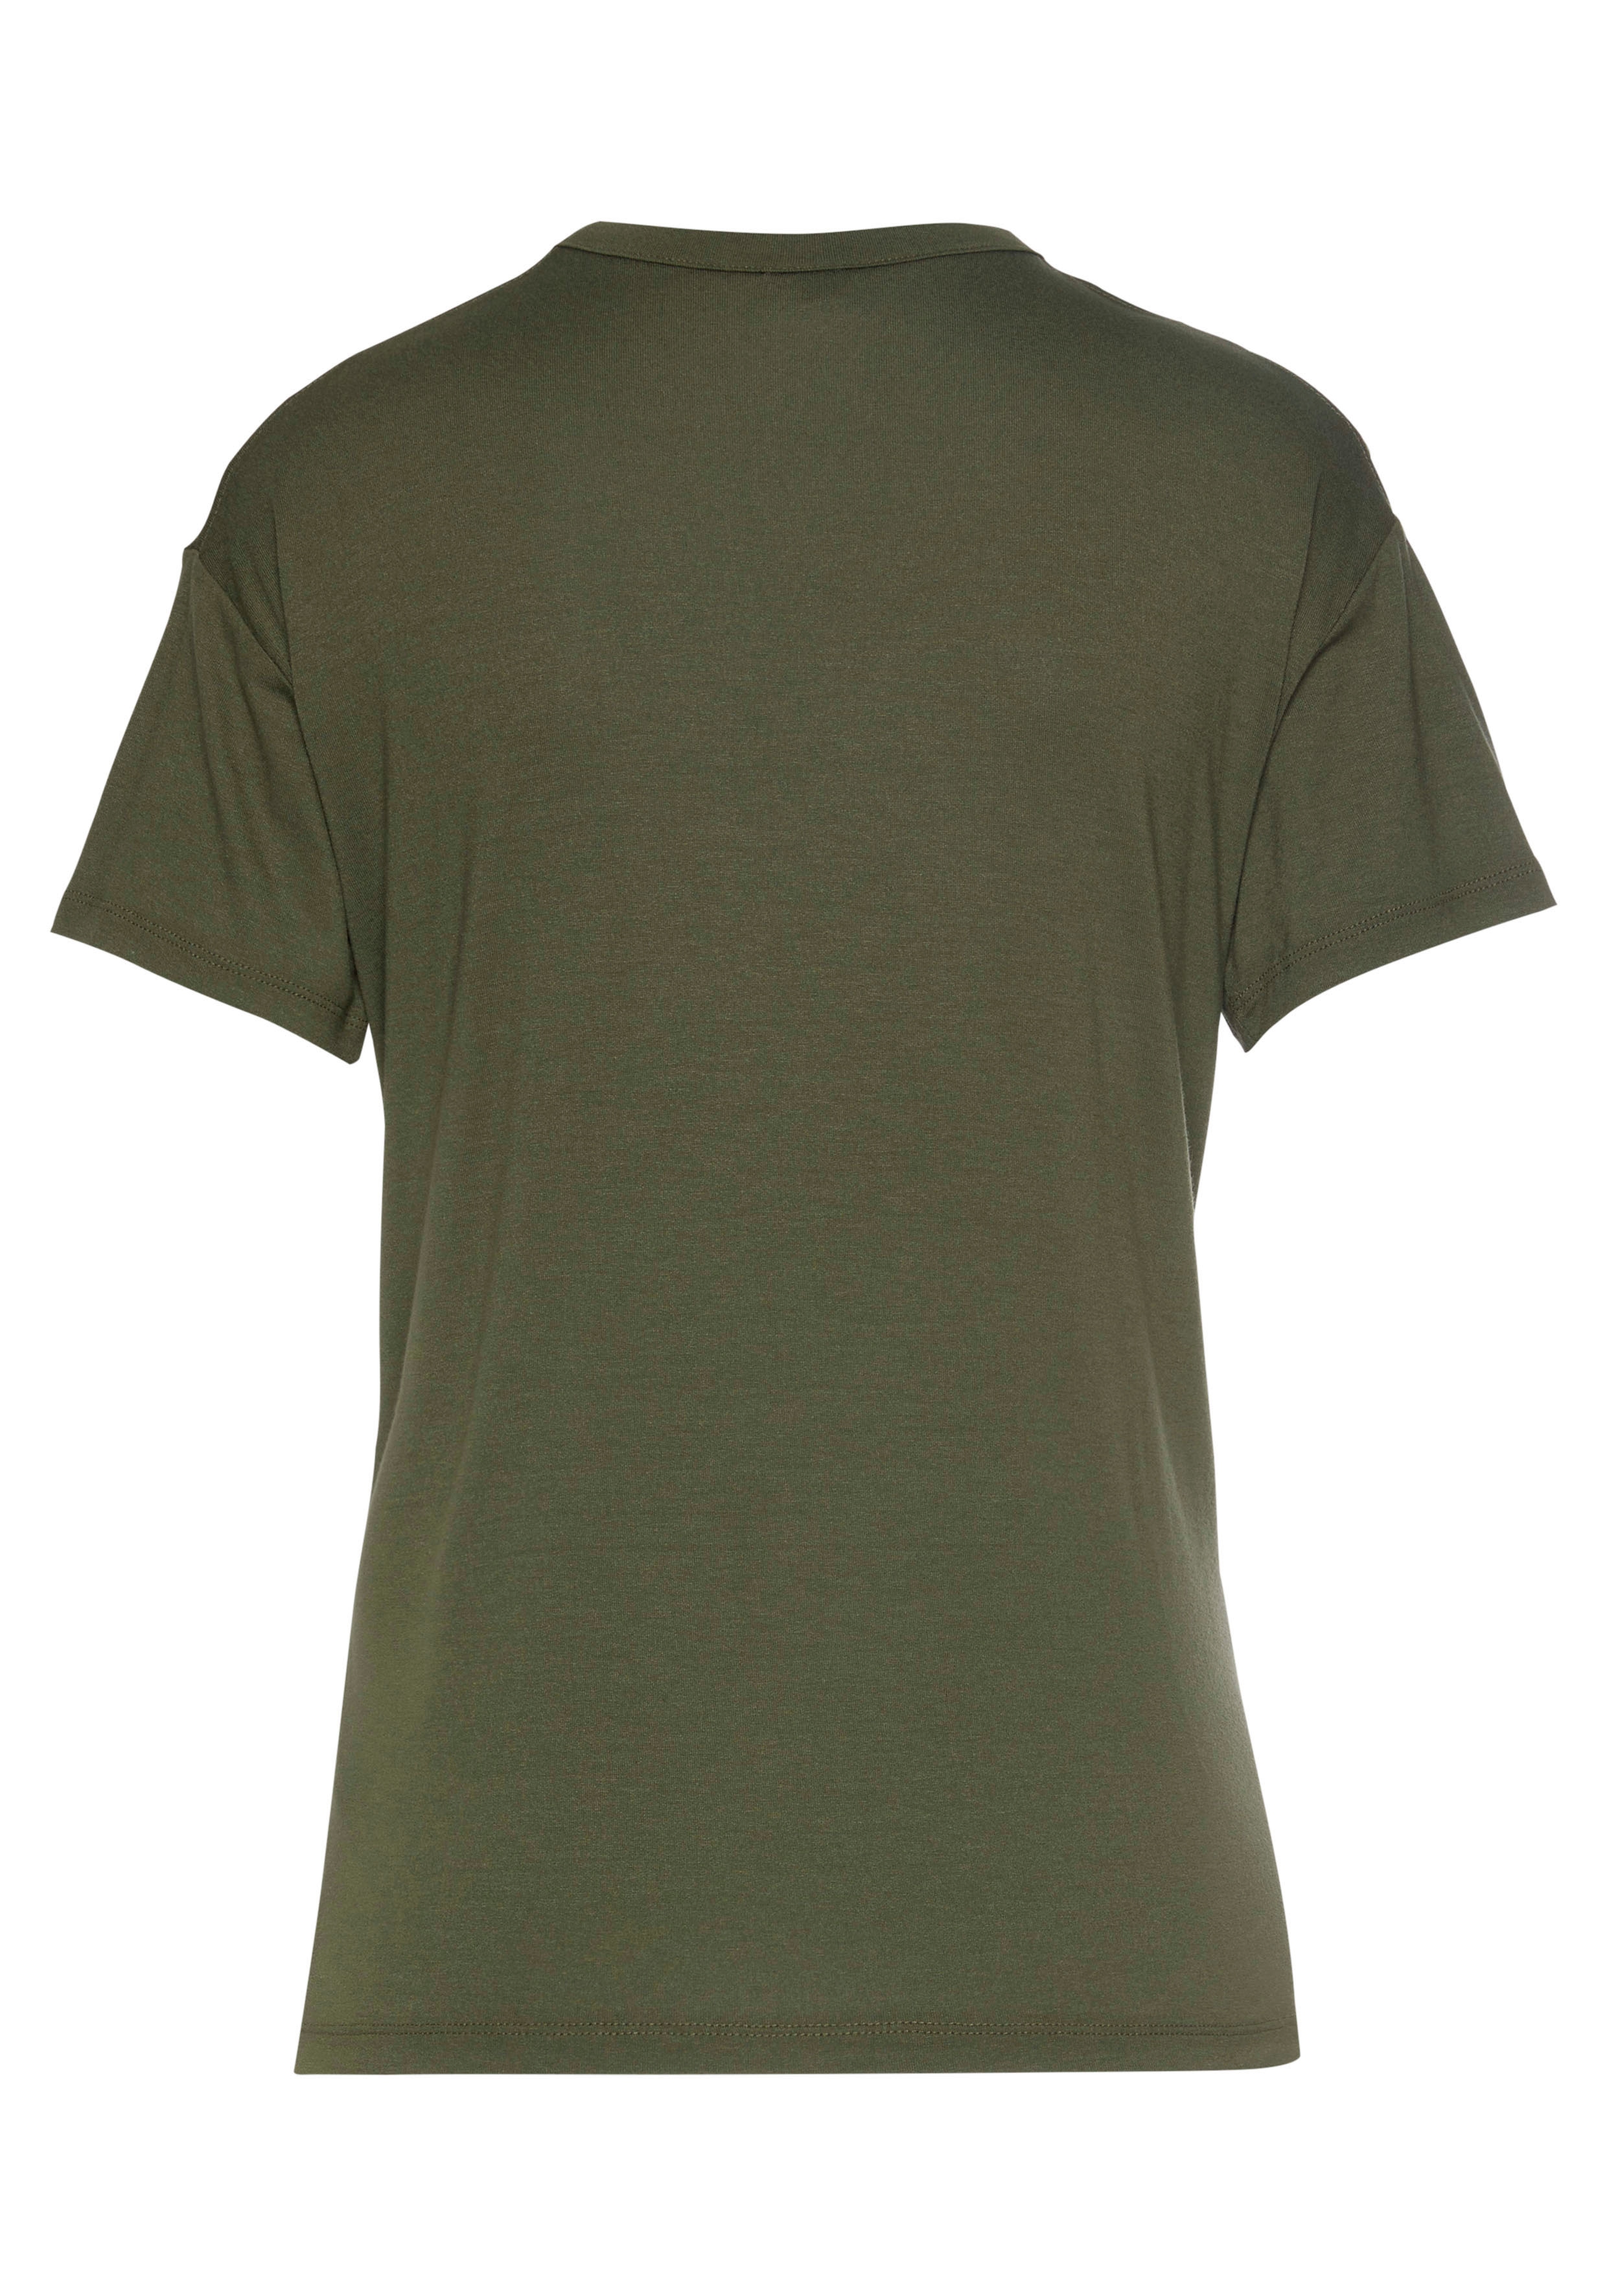 LASCANA Kurzarmshirt, mit Cut-outs an den Schultern » LASCANA | Bademode,  Unterwäsche & Lingerie online kaufen